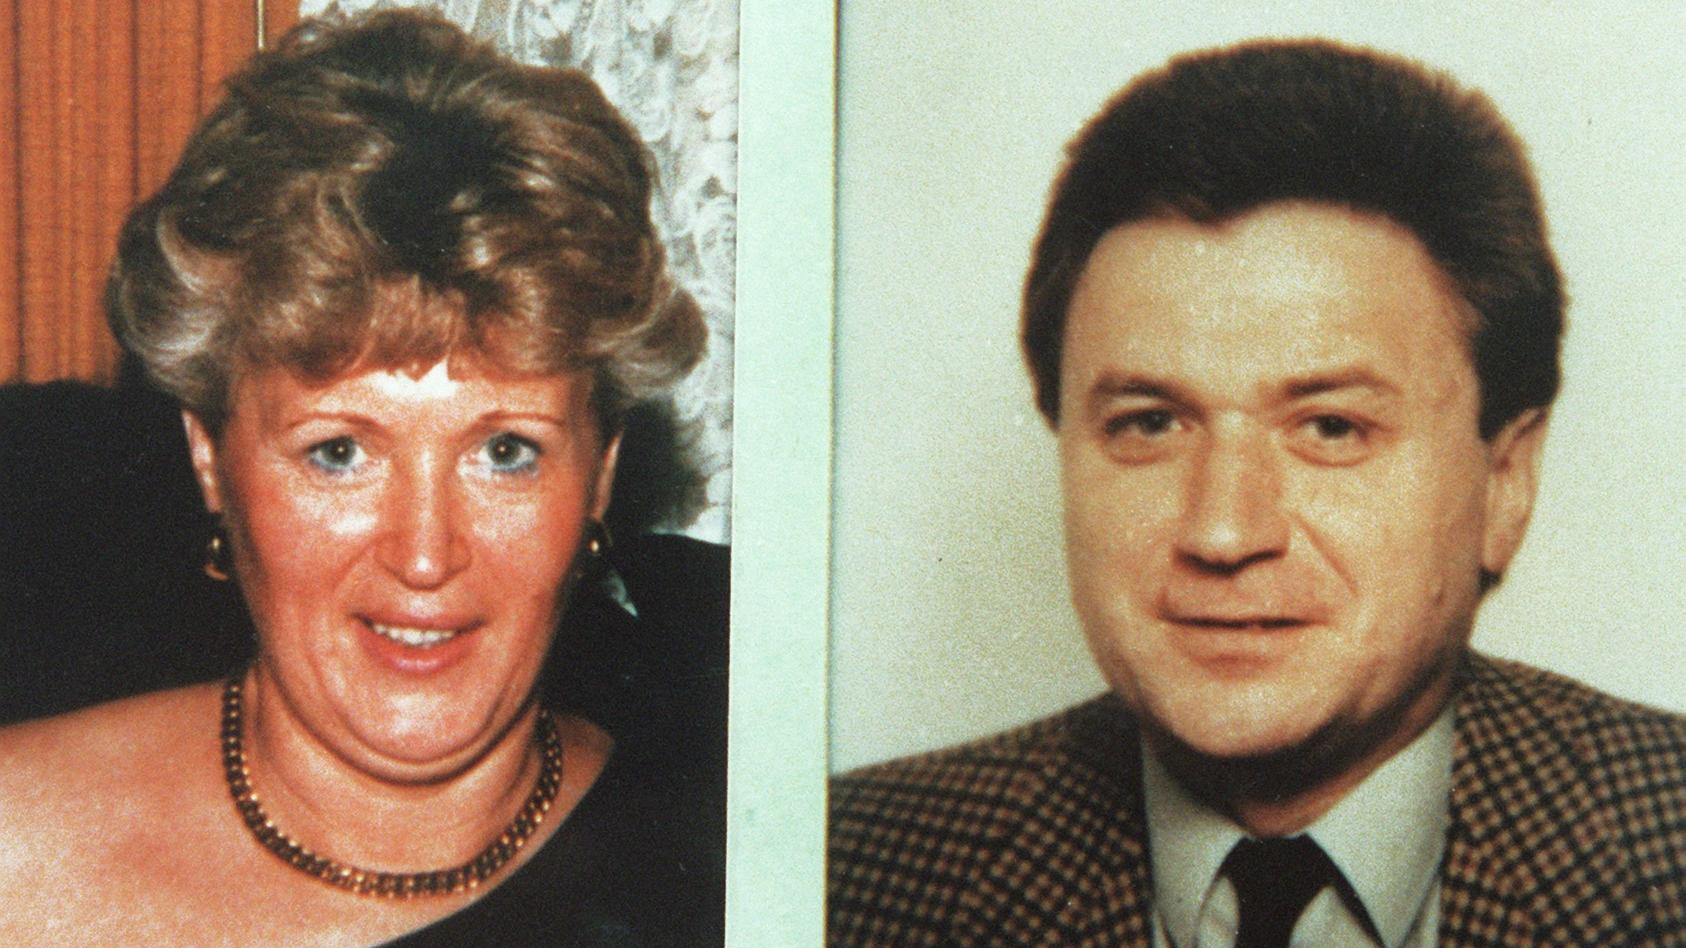 ARCHIV - Polizeifotos zeigen die 46 jährige Ingrid W. aus Uelzen und ihren 43-jährigen Freund, Bernd-Michael K. aus Hannover, die in einem Waldgebiet bei Göhrde (Niedersachsen) im Juni 1989 ermordet wurden. Nach der Aufklärung von zwei fast 30 Jahre 